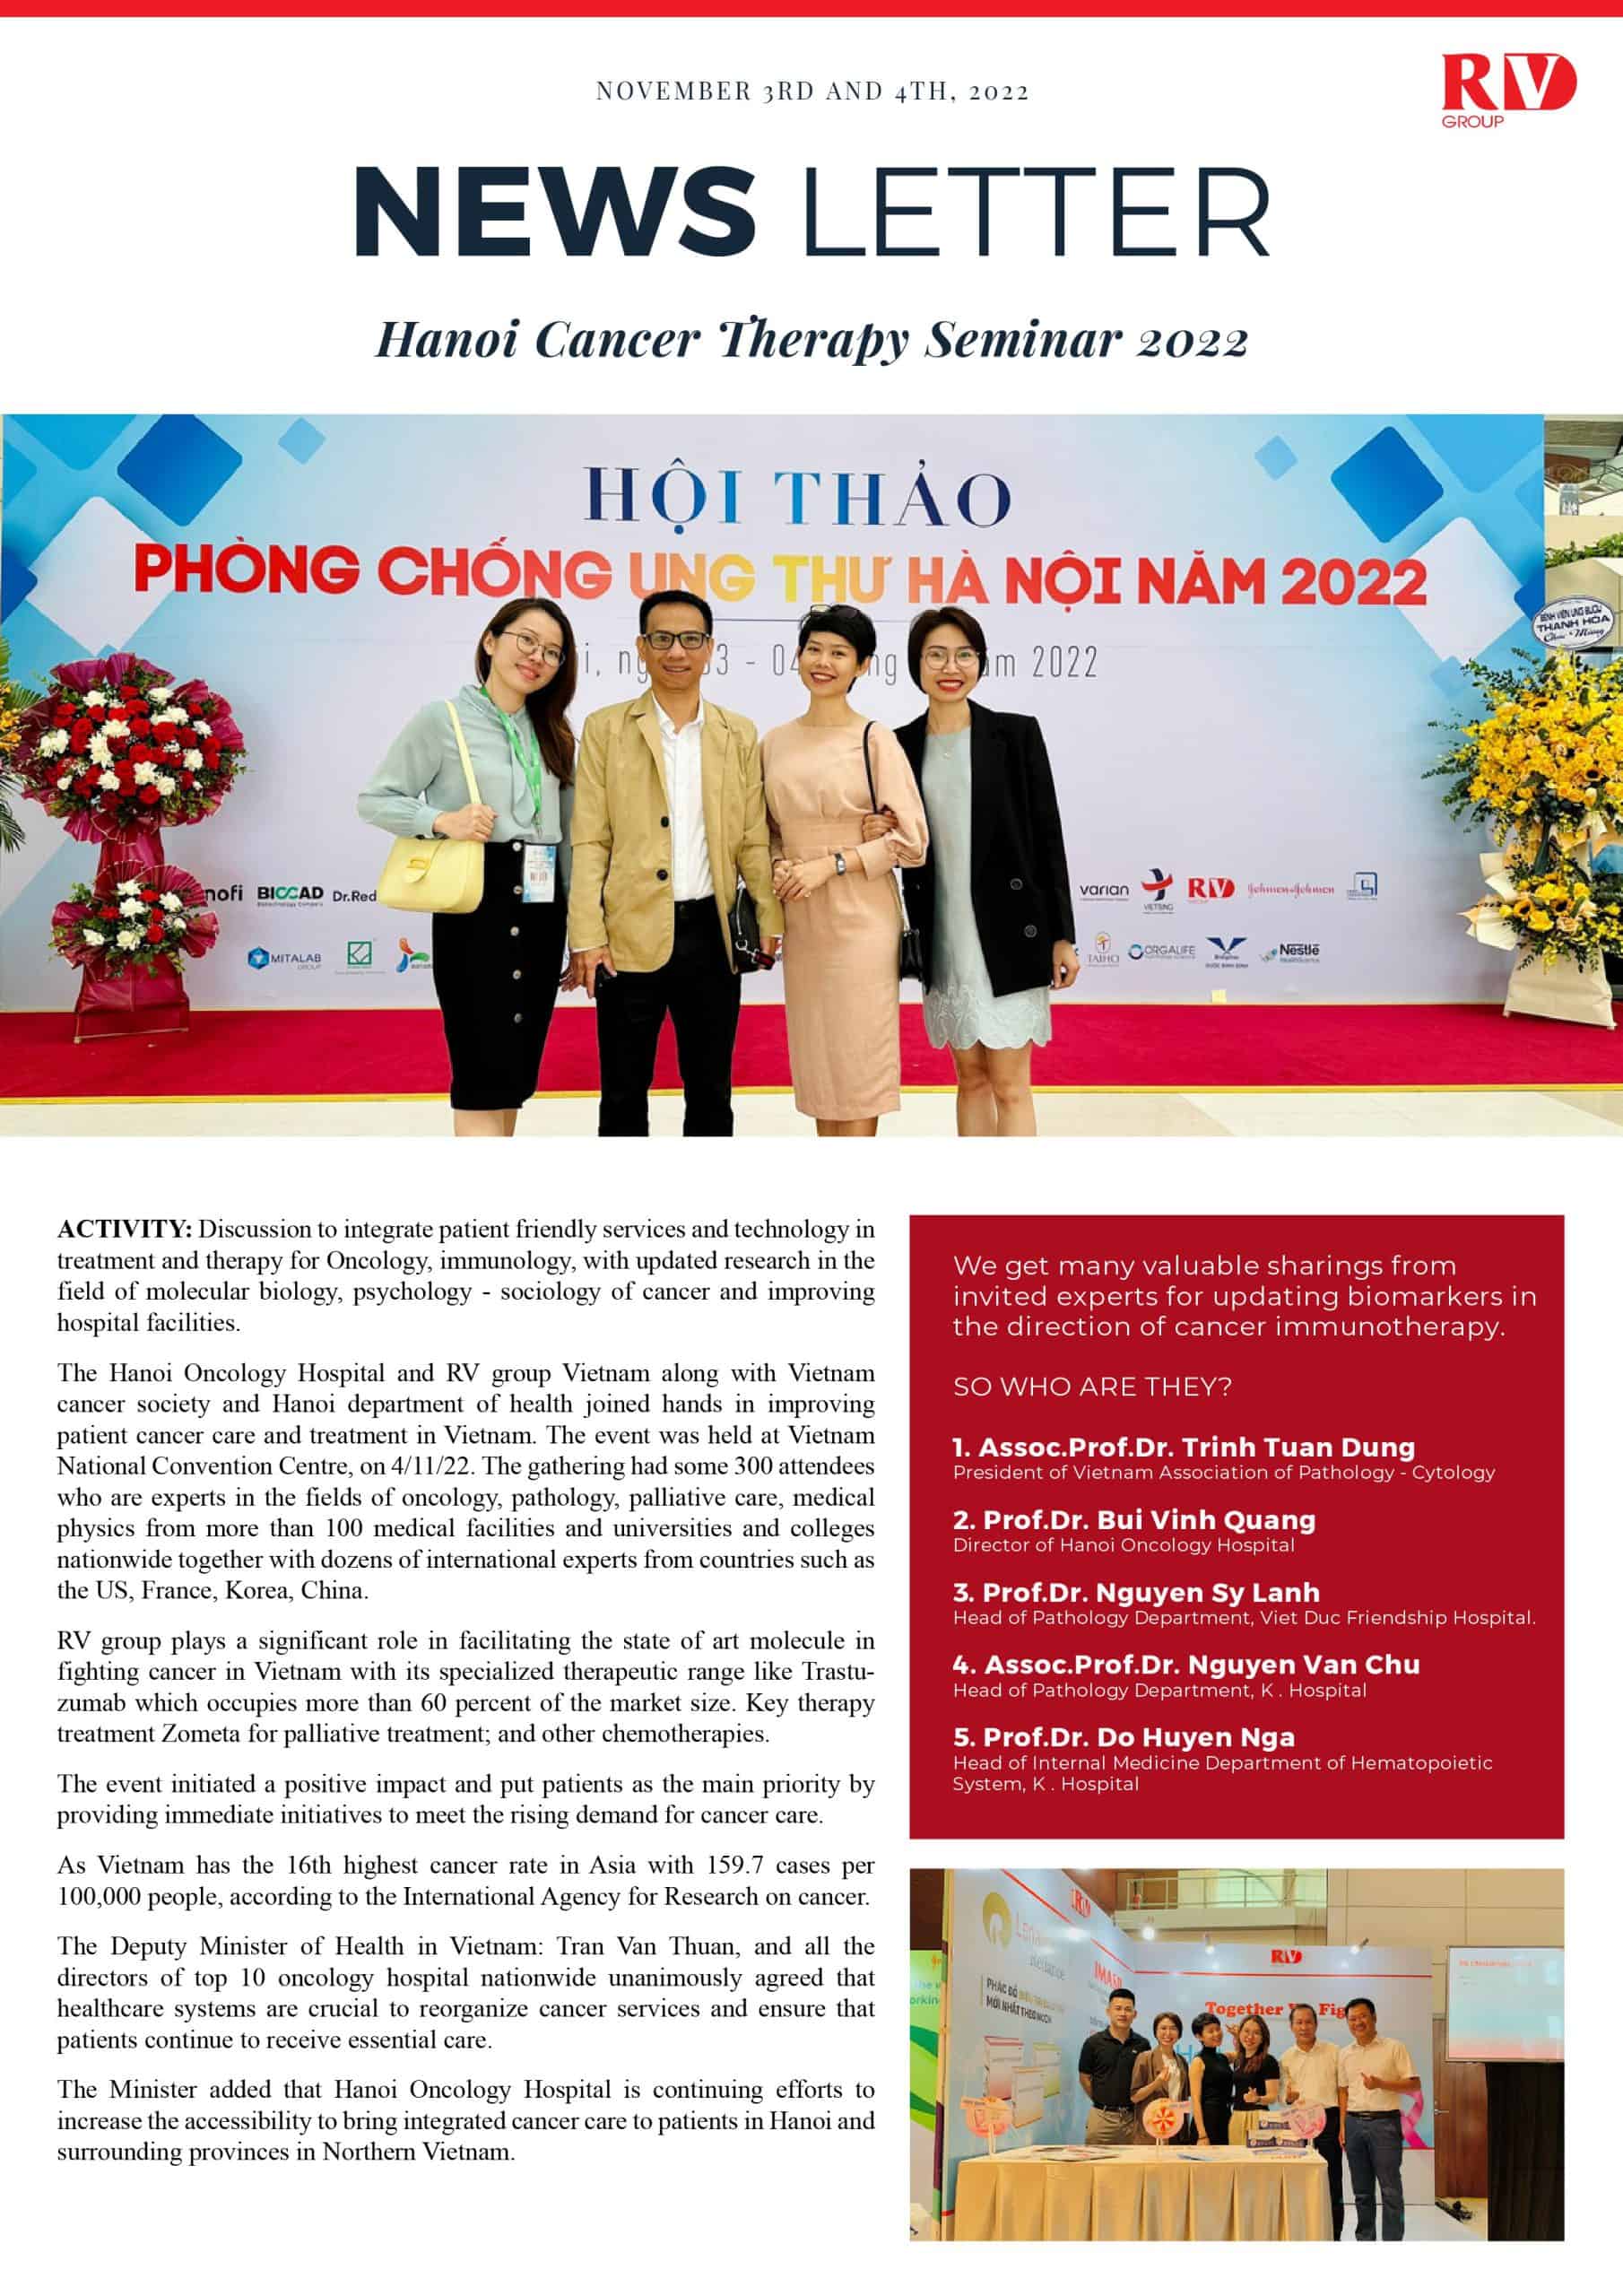 Cancer Therapy Seminar Hanoi 2022